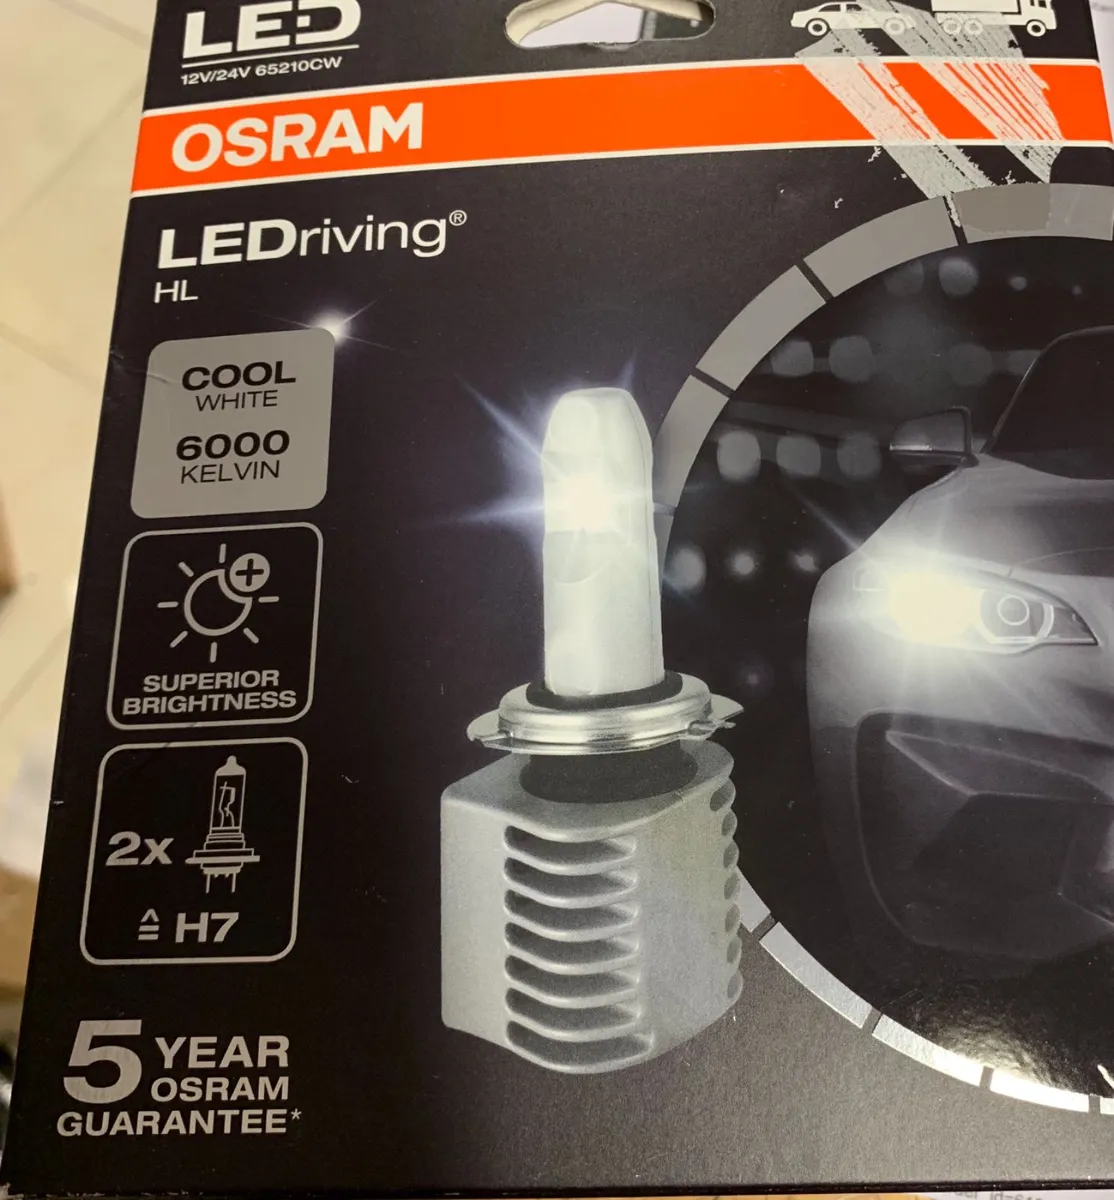 Osram led lighting at fk online shop - Image 1